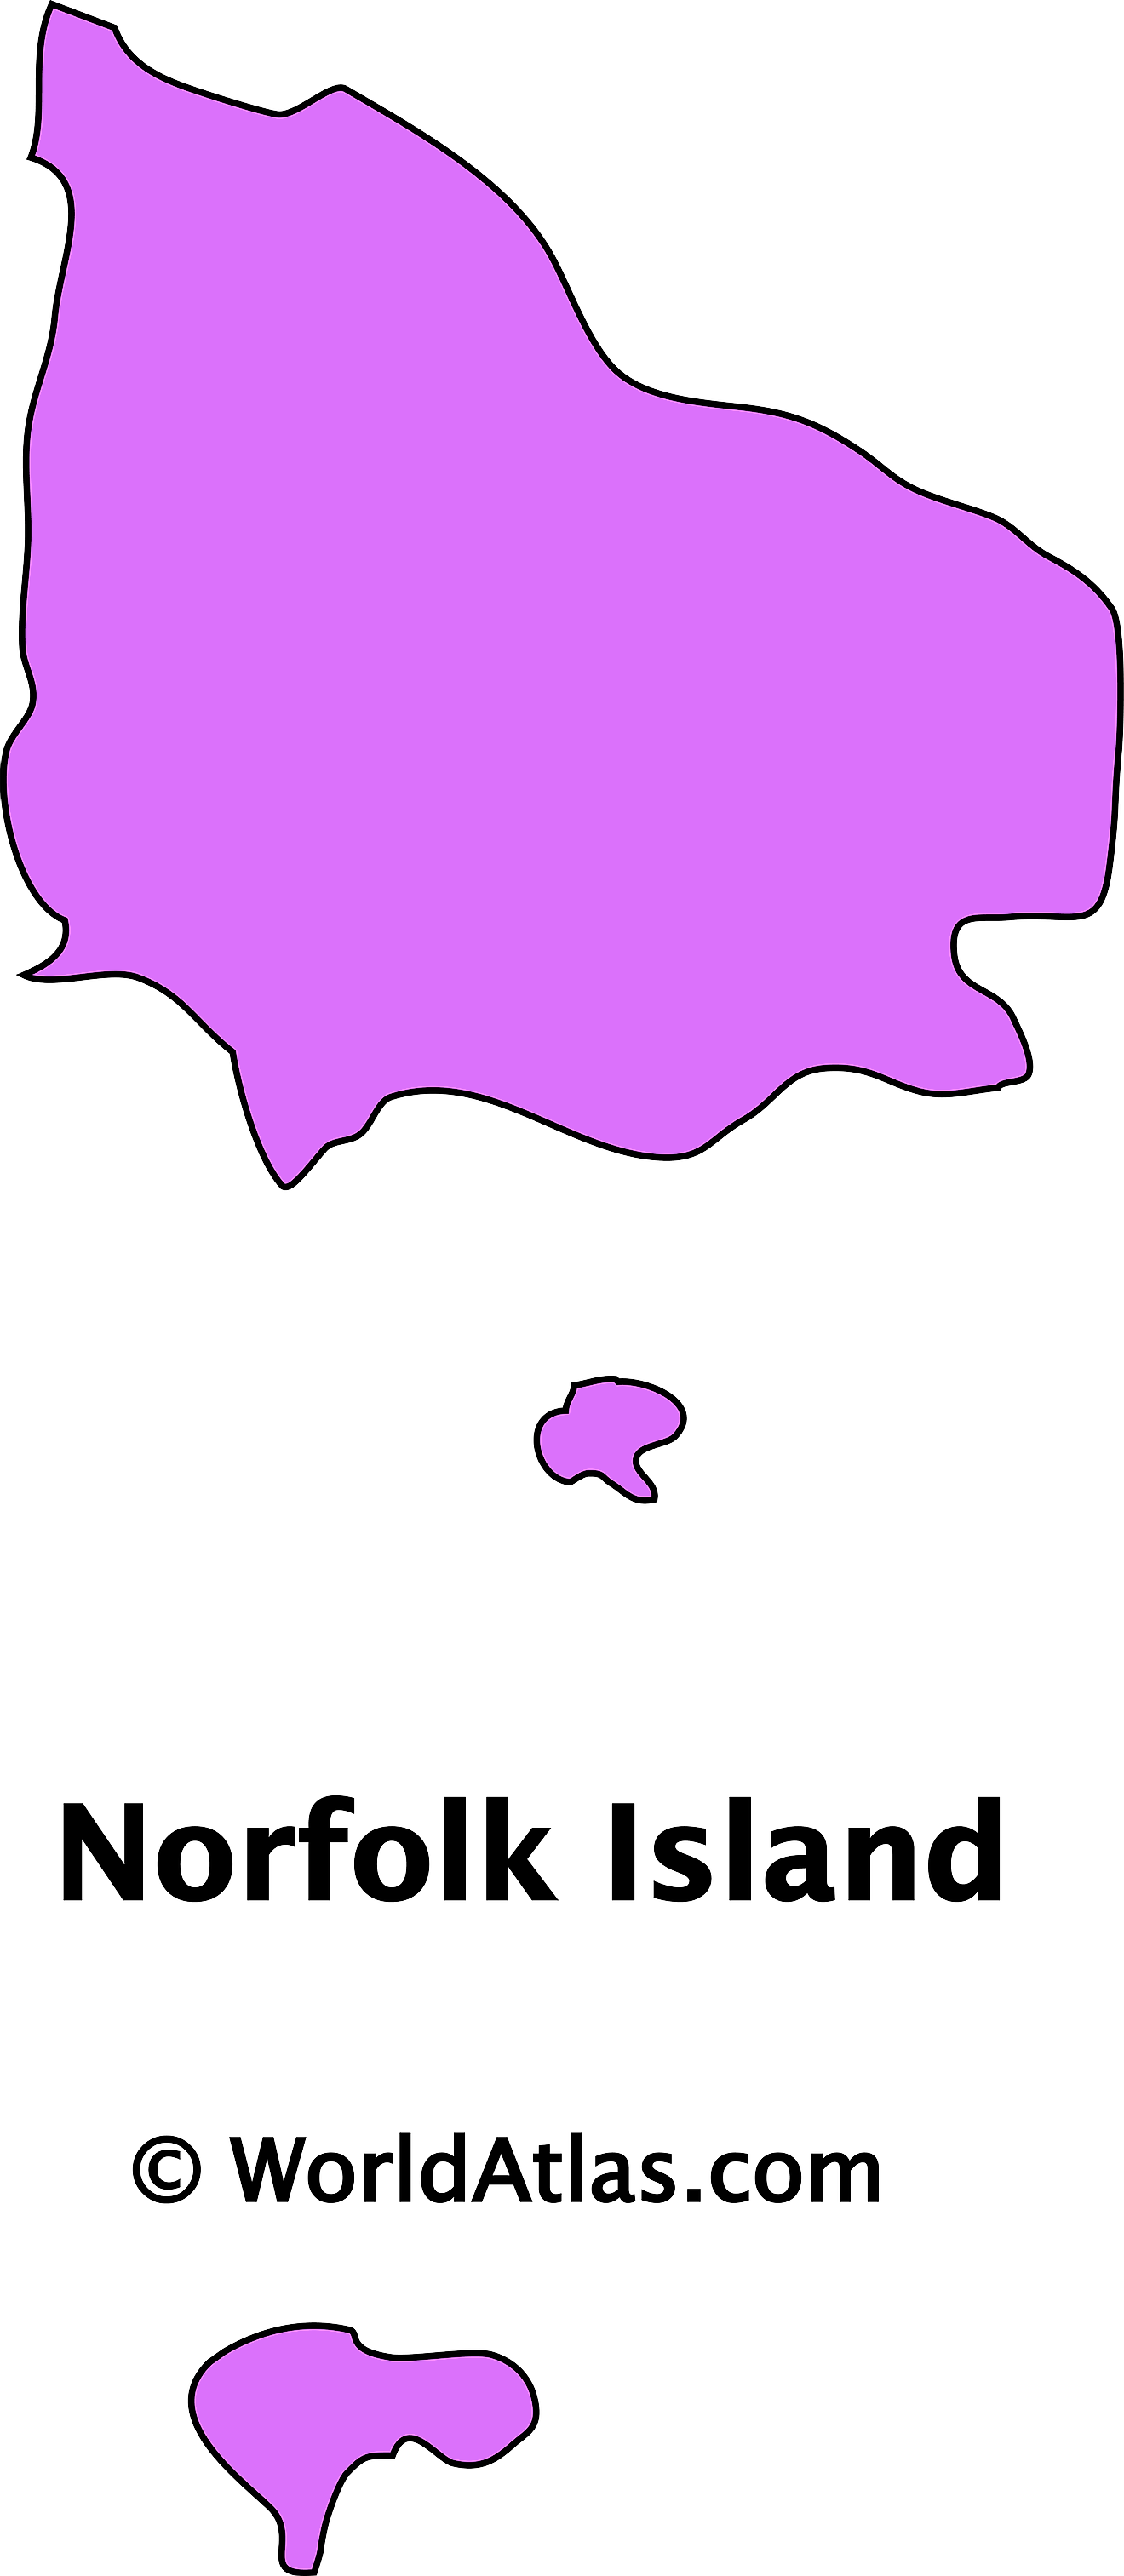 Mapa de contorno de la isla de Norfolk